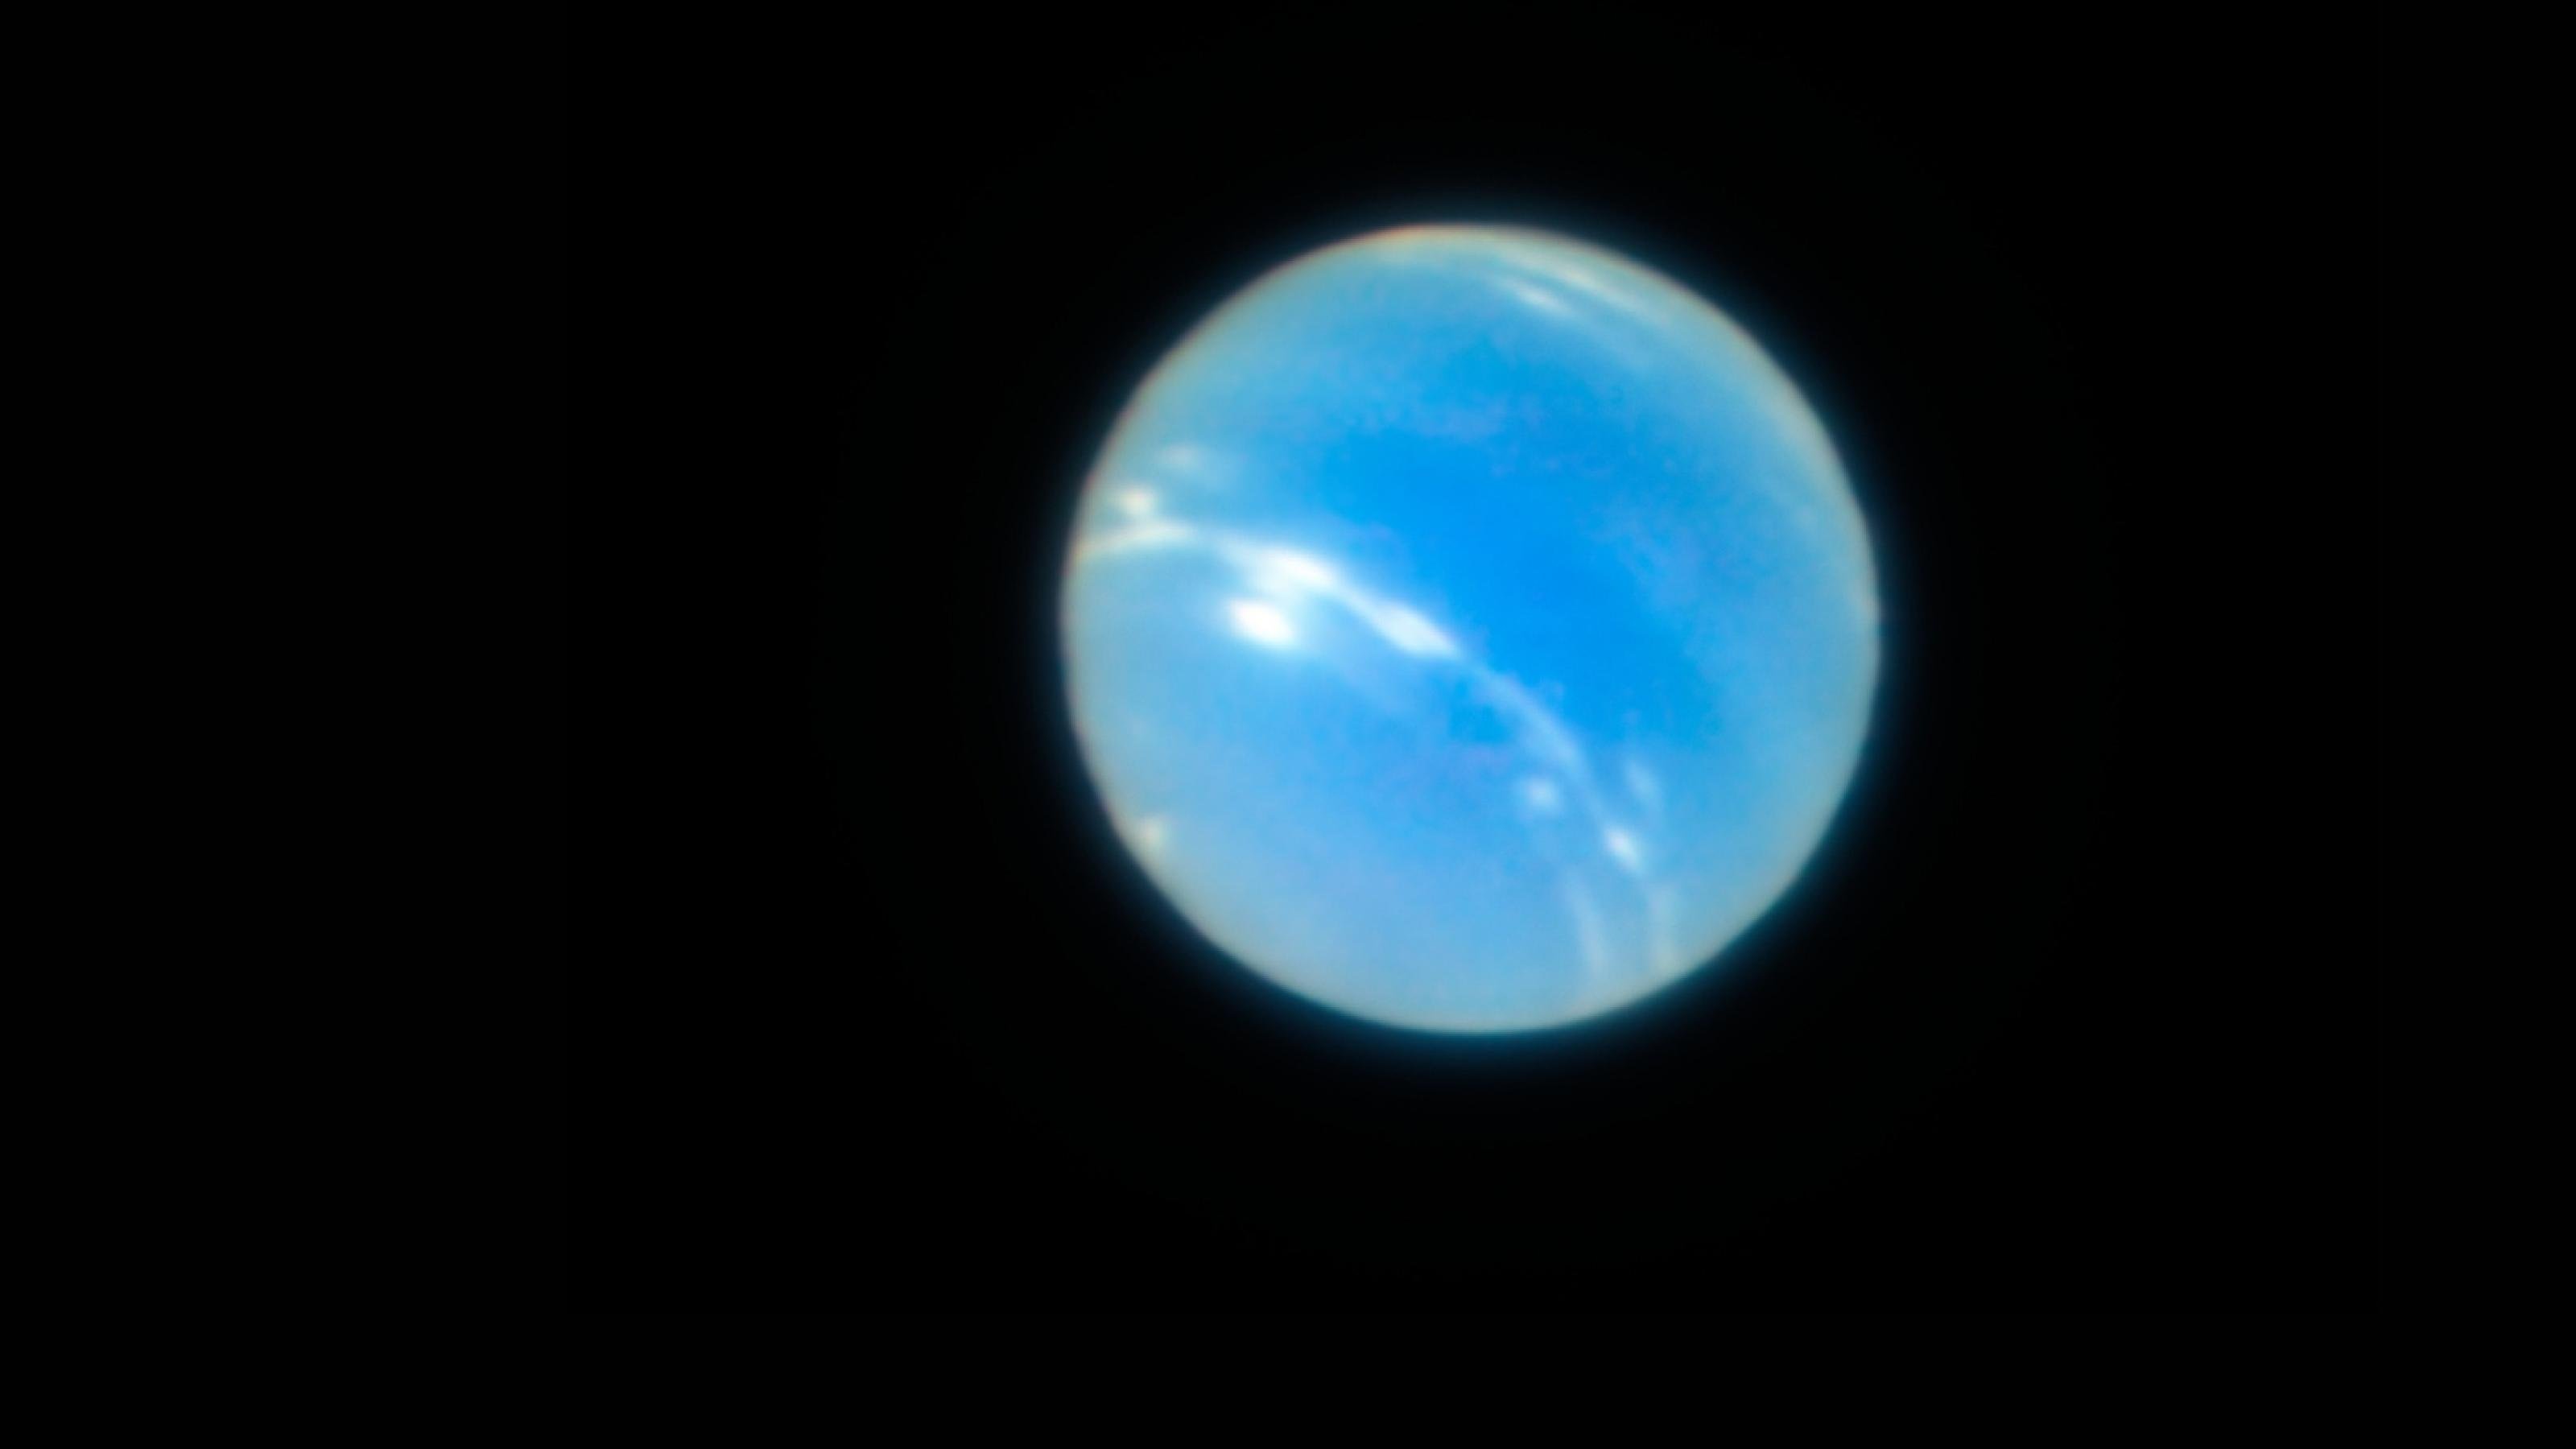 Gestochen scharfe Aufnahme des Neptuns, auf der auch weiße Wolkenbänder sichtbar sind